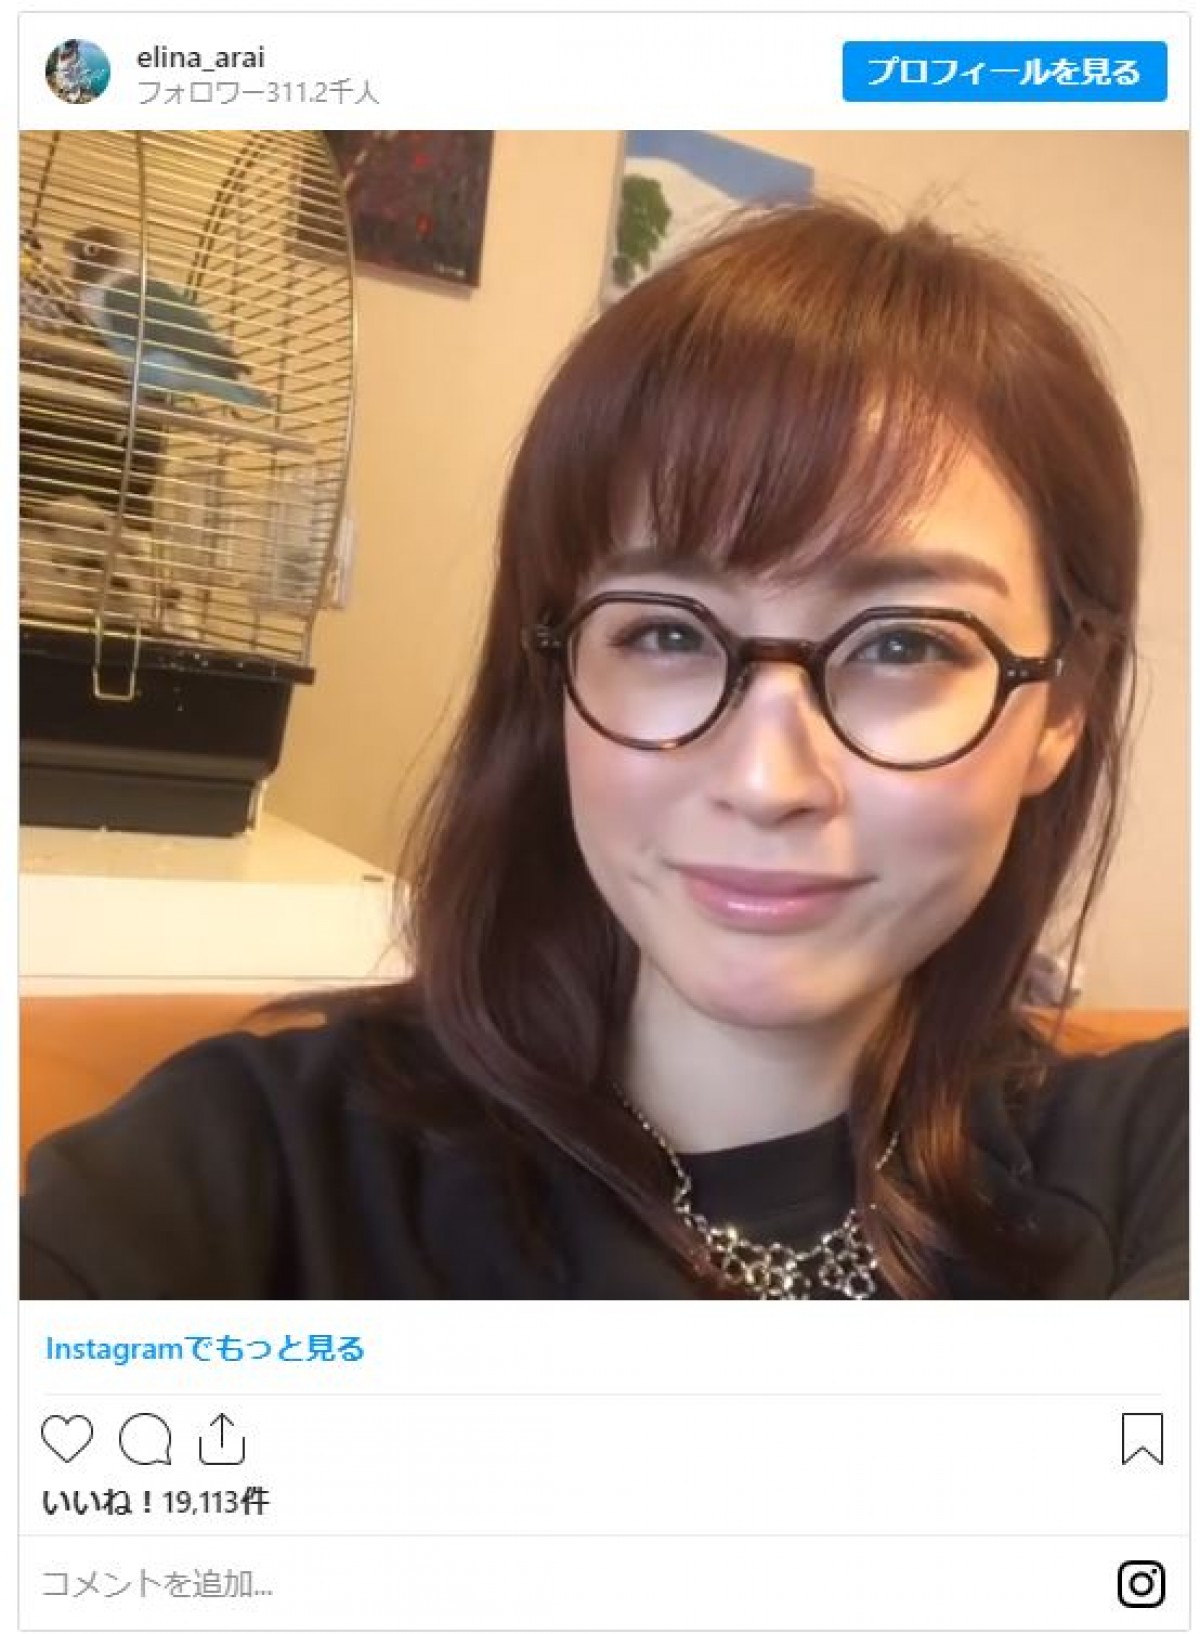 新井恵理那、キュートなメガネ姿 「めちゃくちゃかわいい」と反響